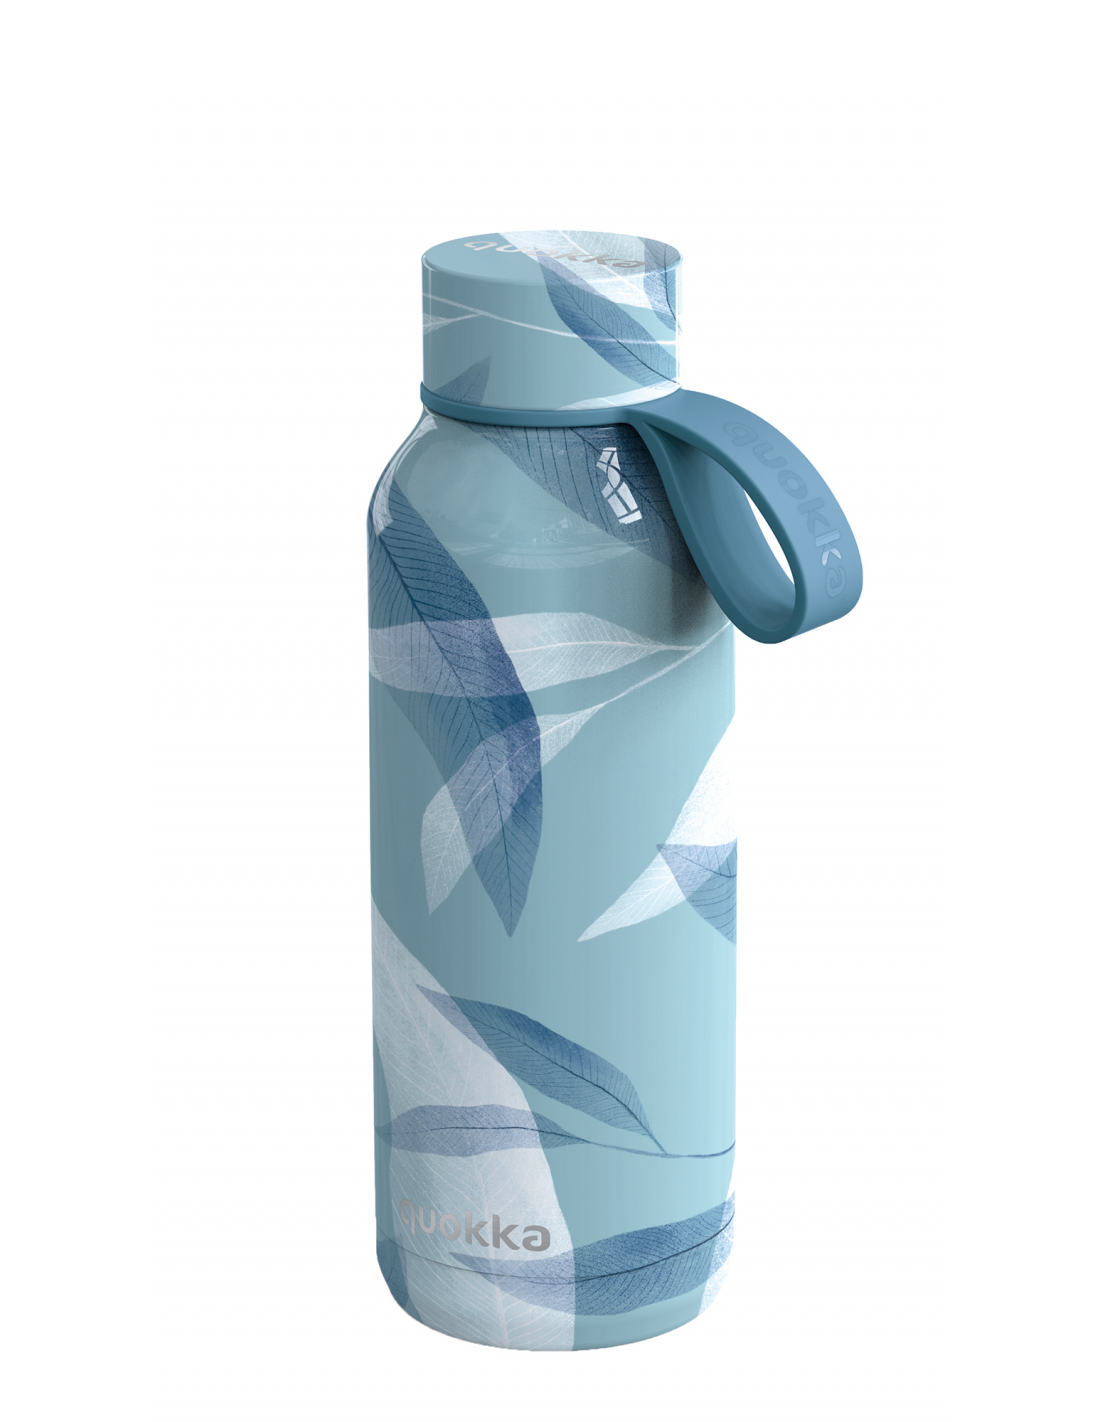 Botellas de agua reutilizables térmicas en La Casita de Daniela.com  Capacidad 510 ml